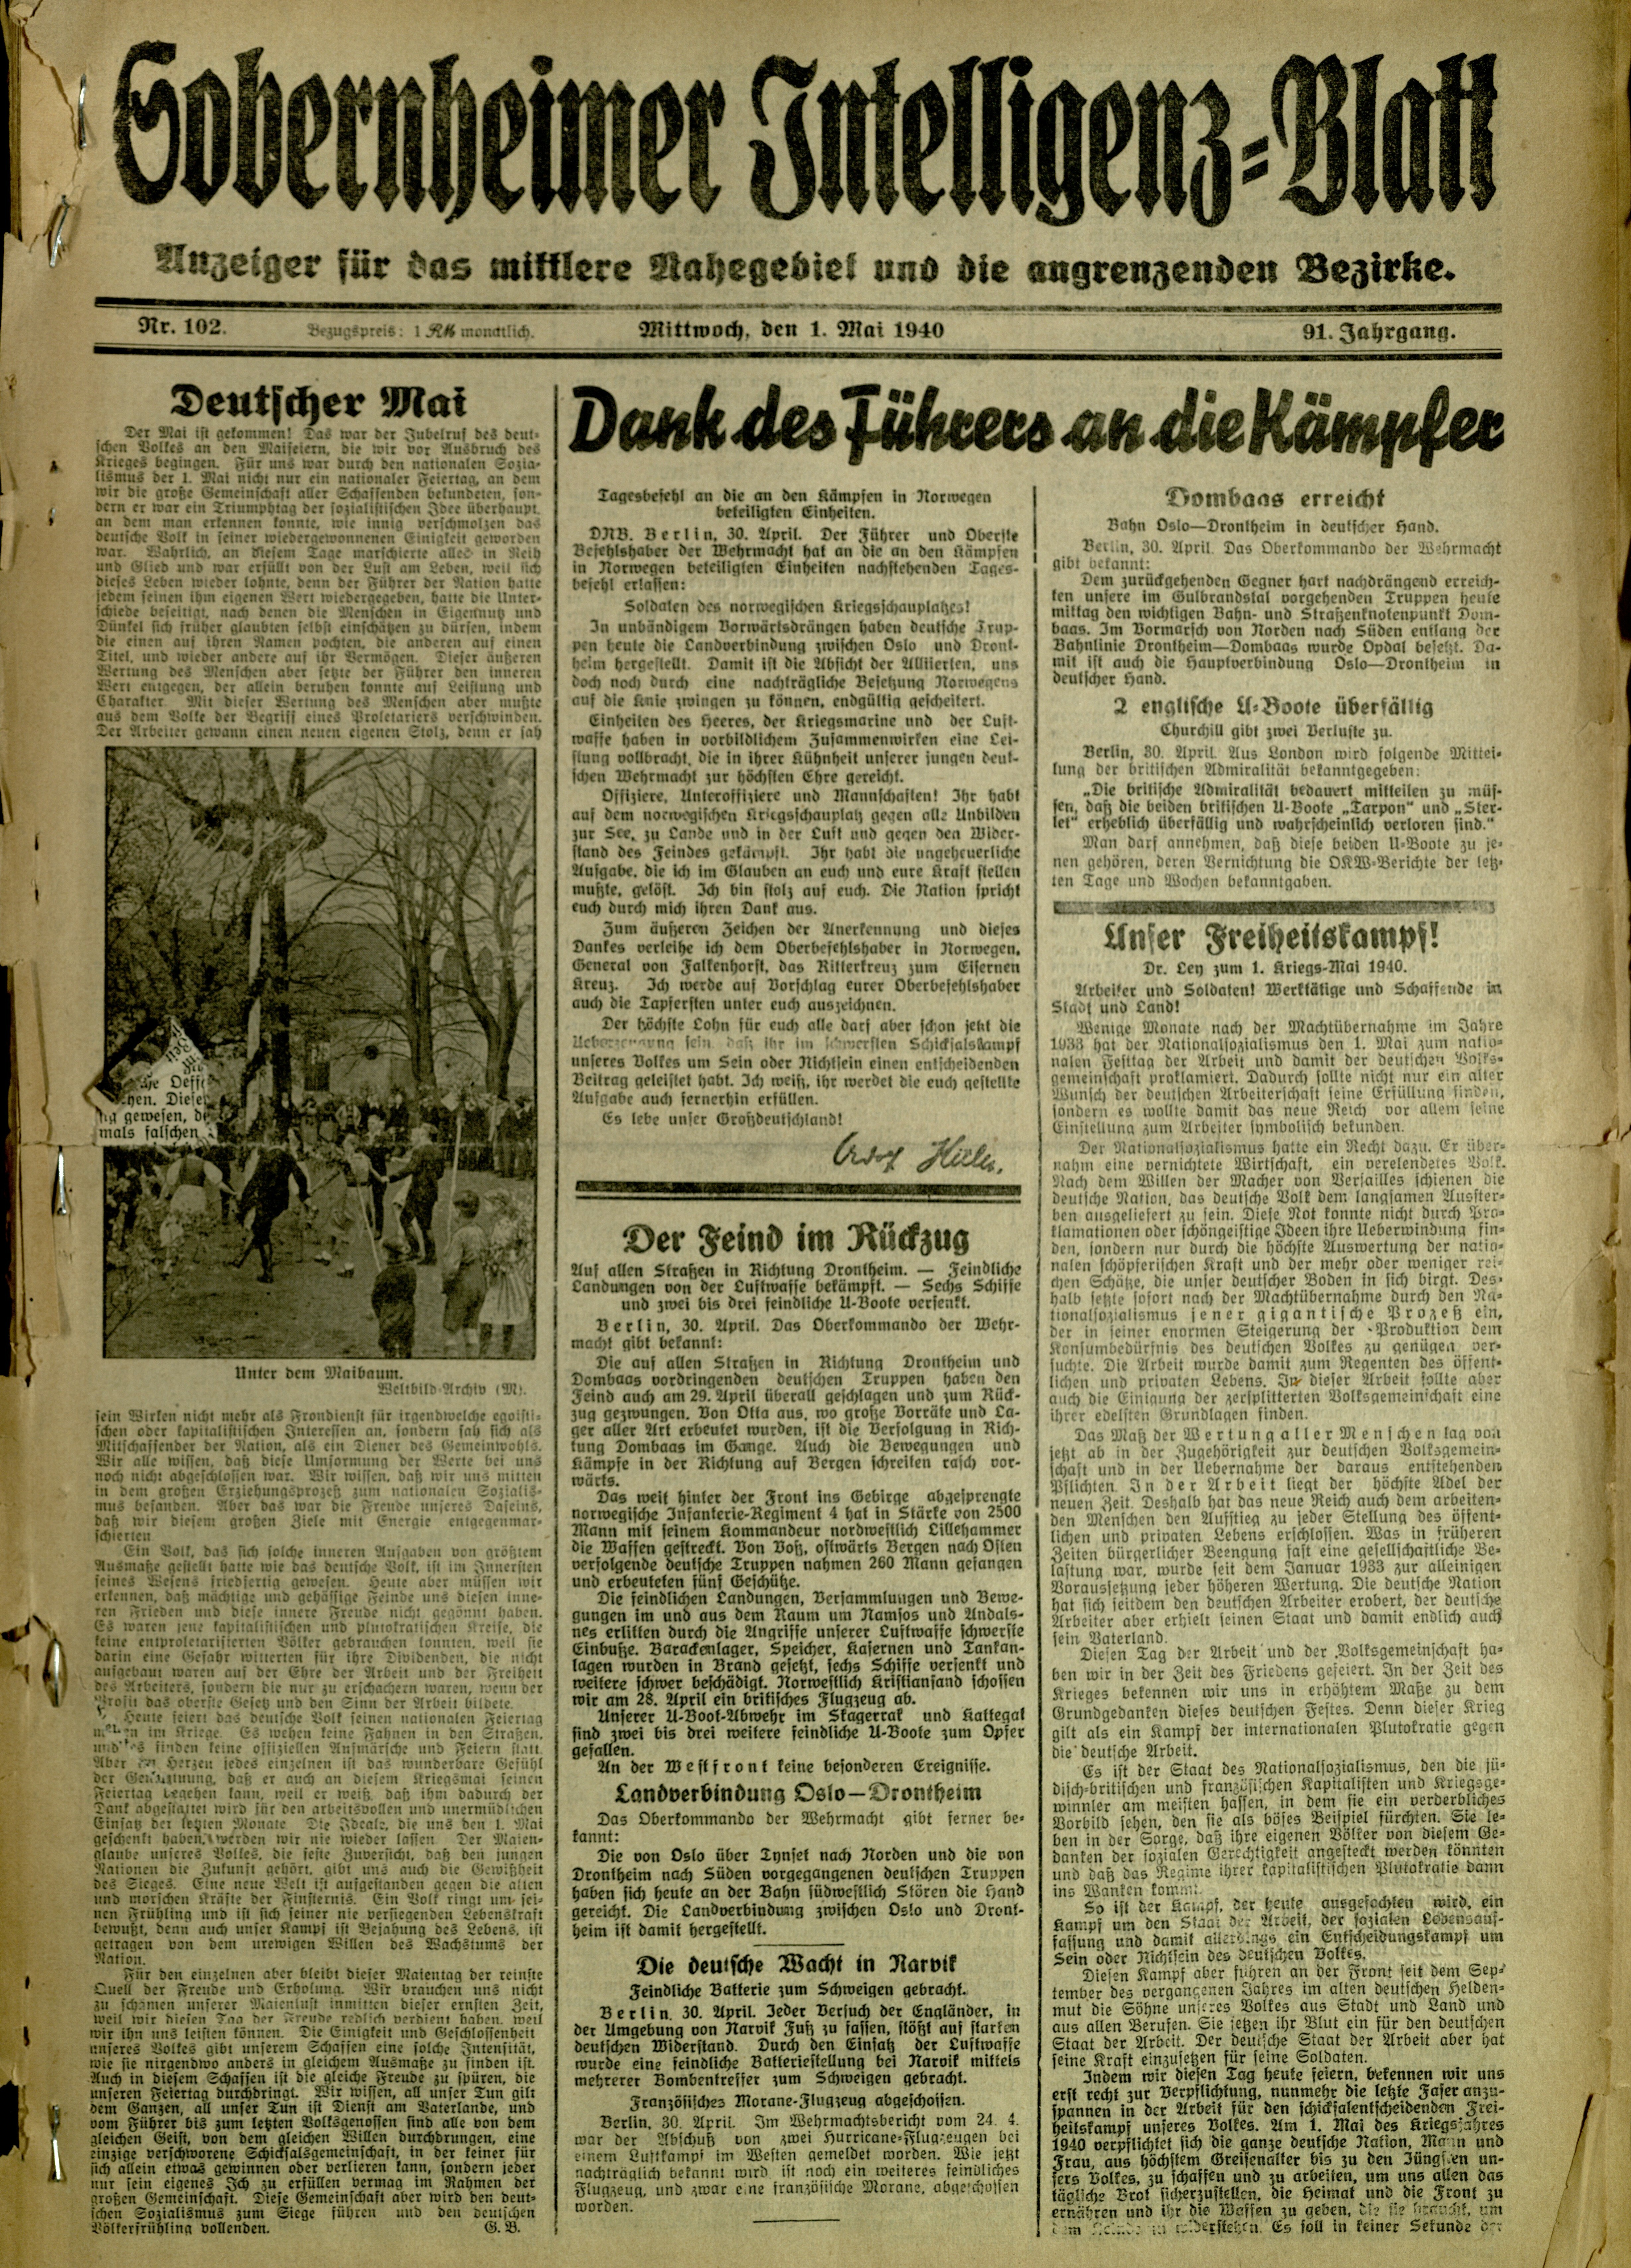 Zeitung: Sobernheimer Intelligenzblatt; Mai 1940, Jg. 91 Nr. 102 (Heimatmuseum Bad Sobernheim CC BY-NC-SA)